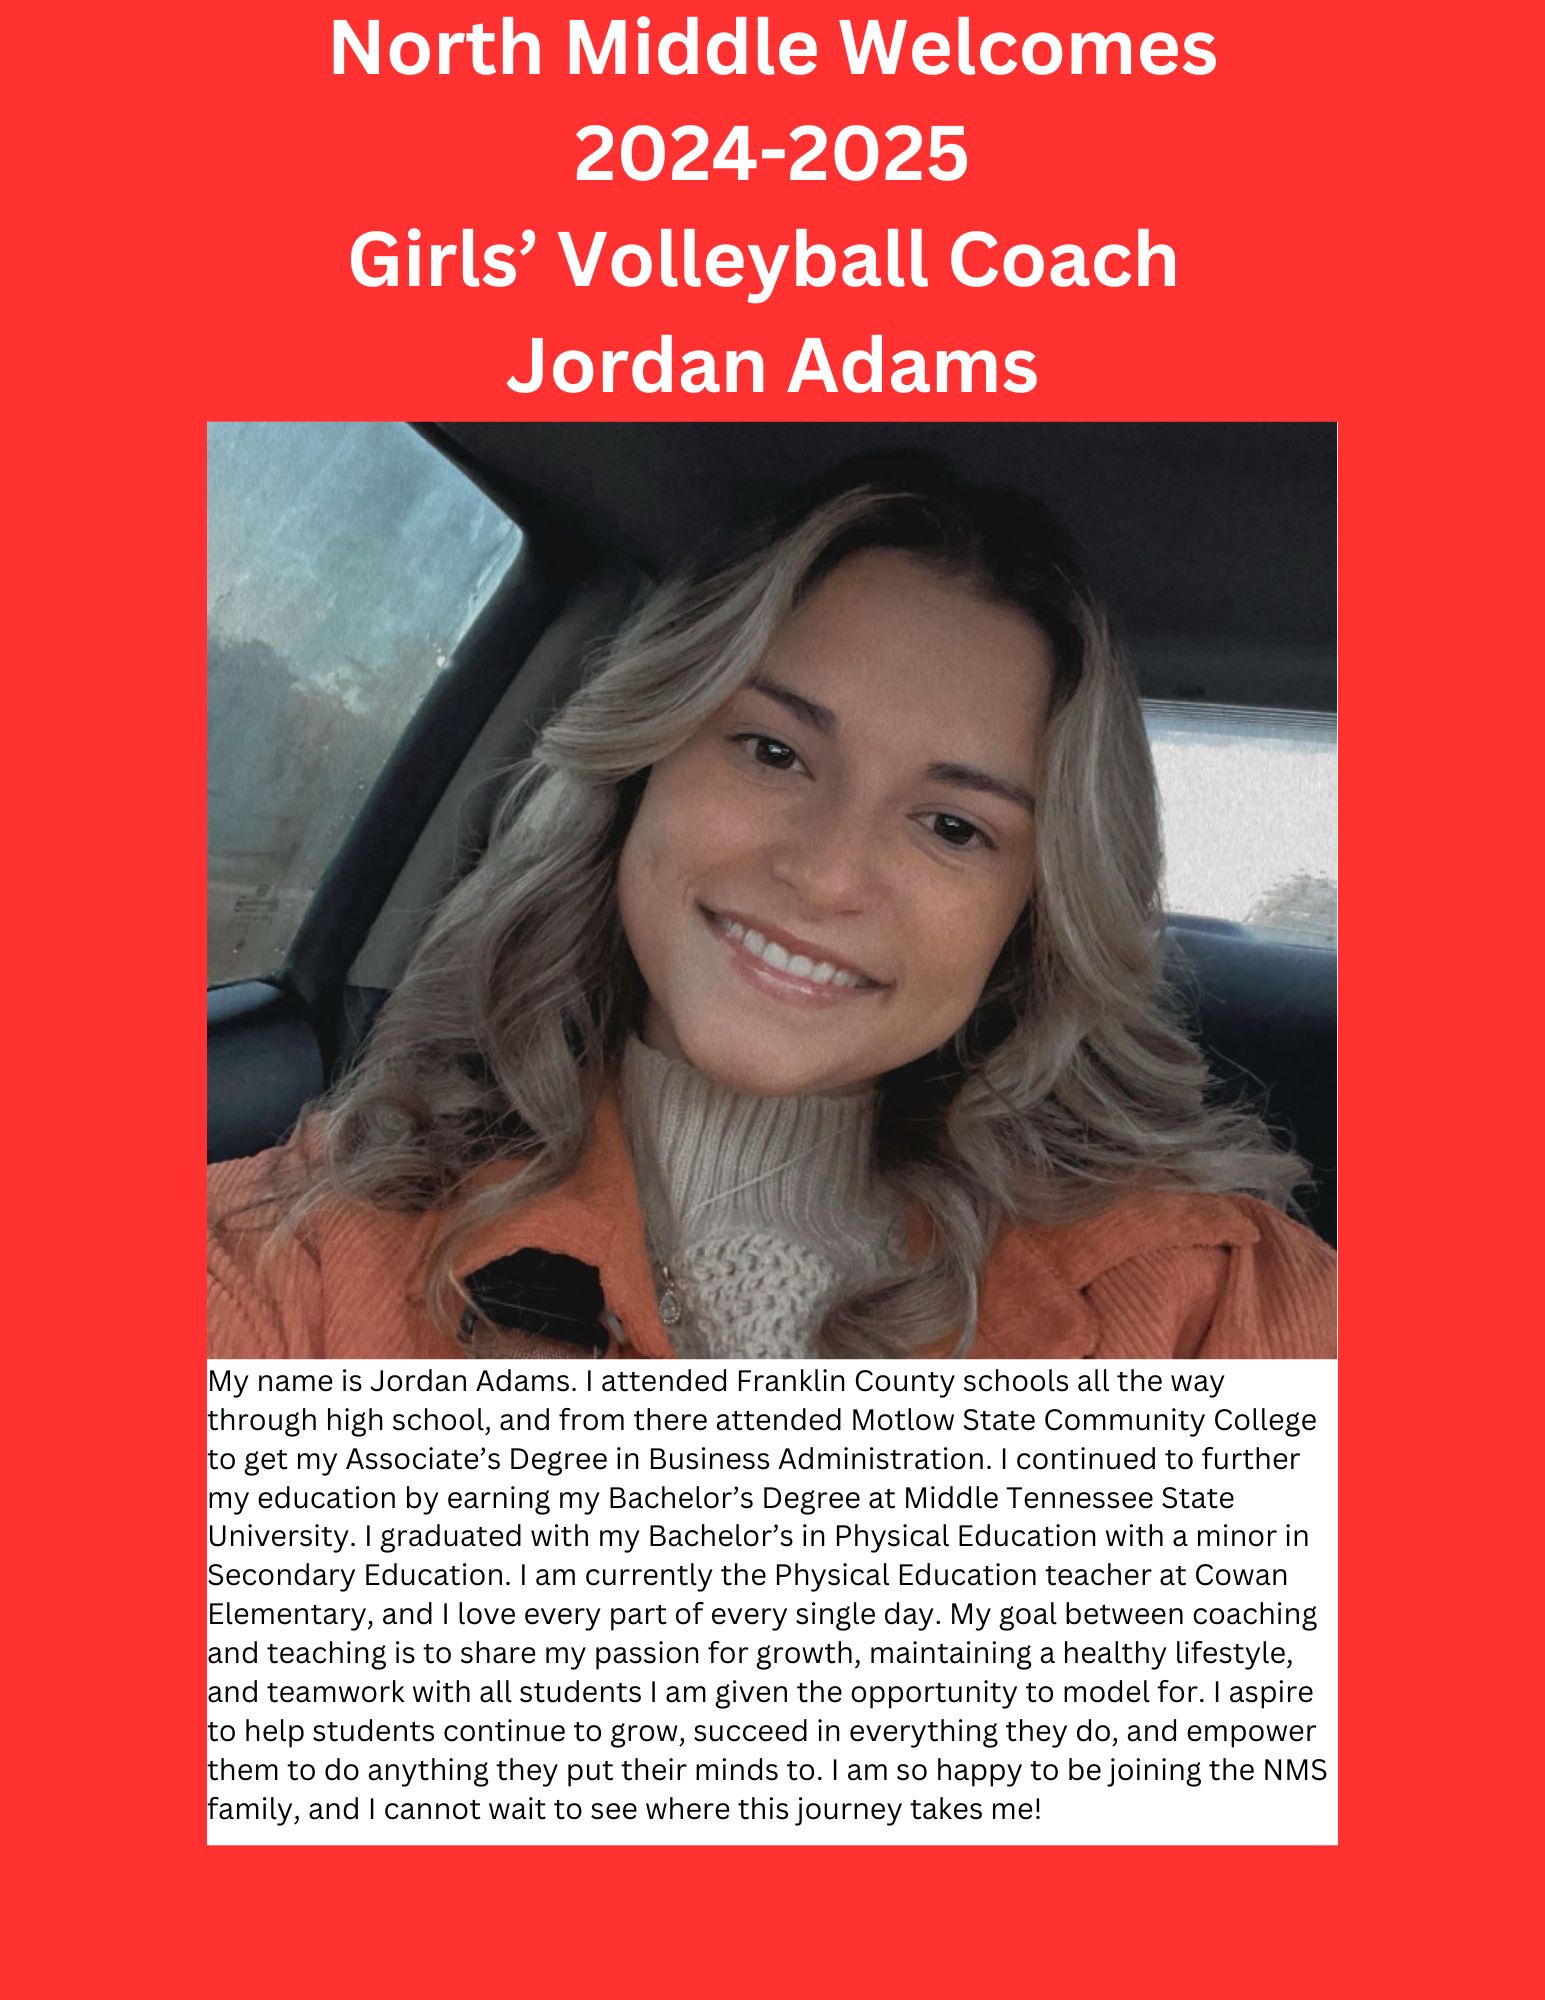 Girl's Volleyball Coach Jordan.Adams@fcstn.net